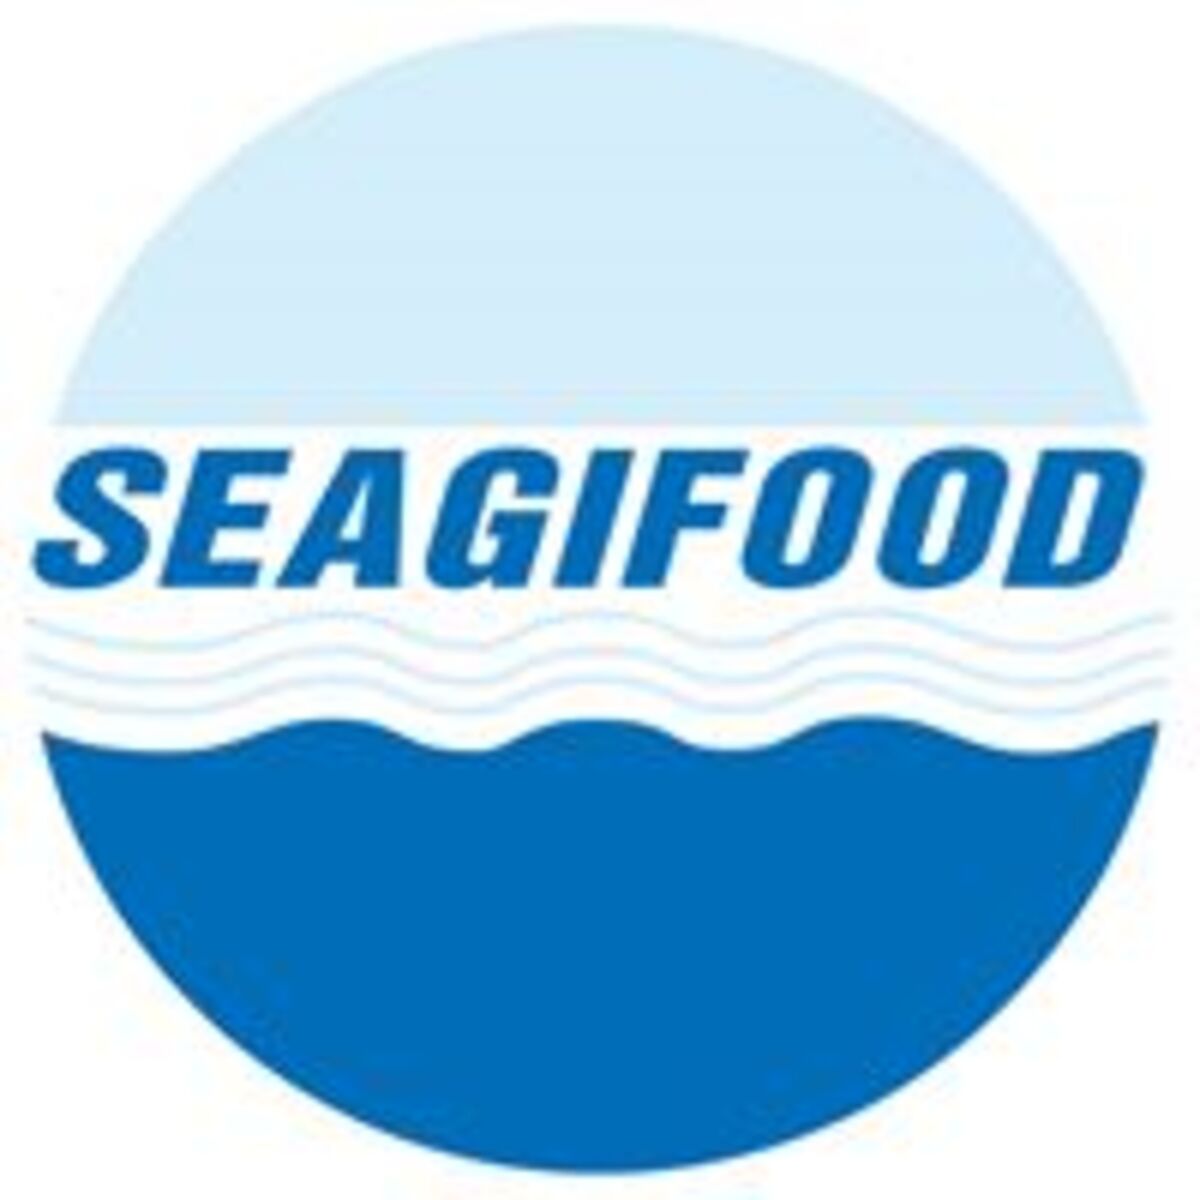 Seagifood